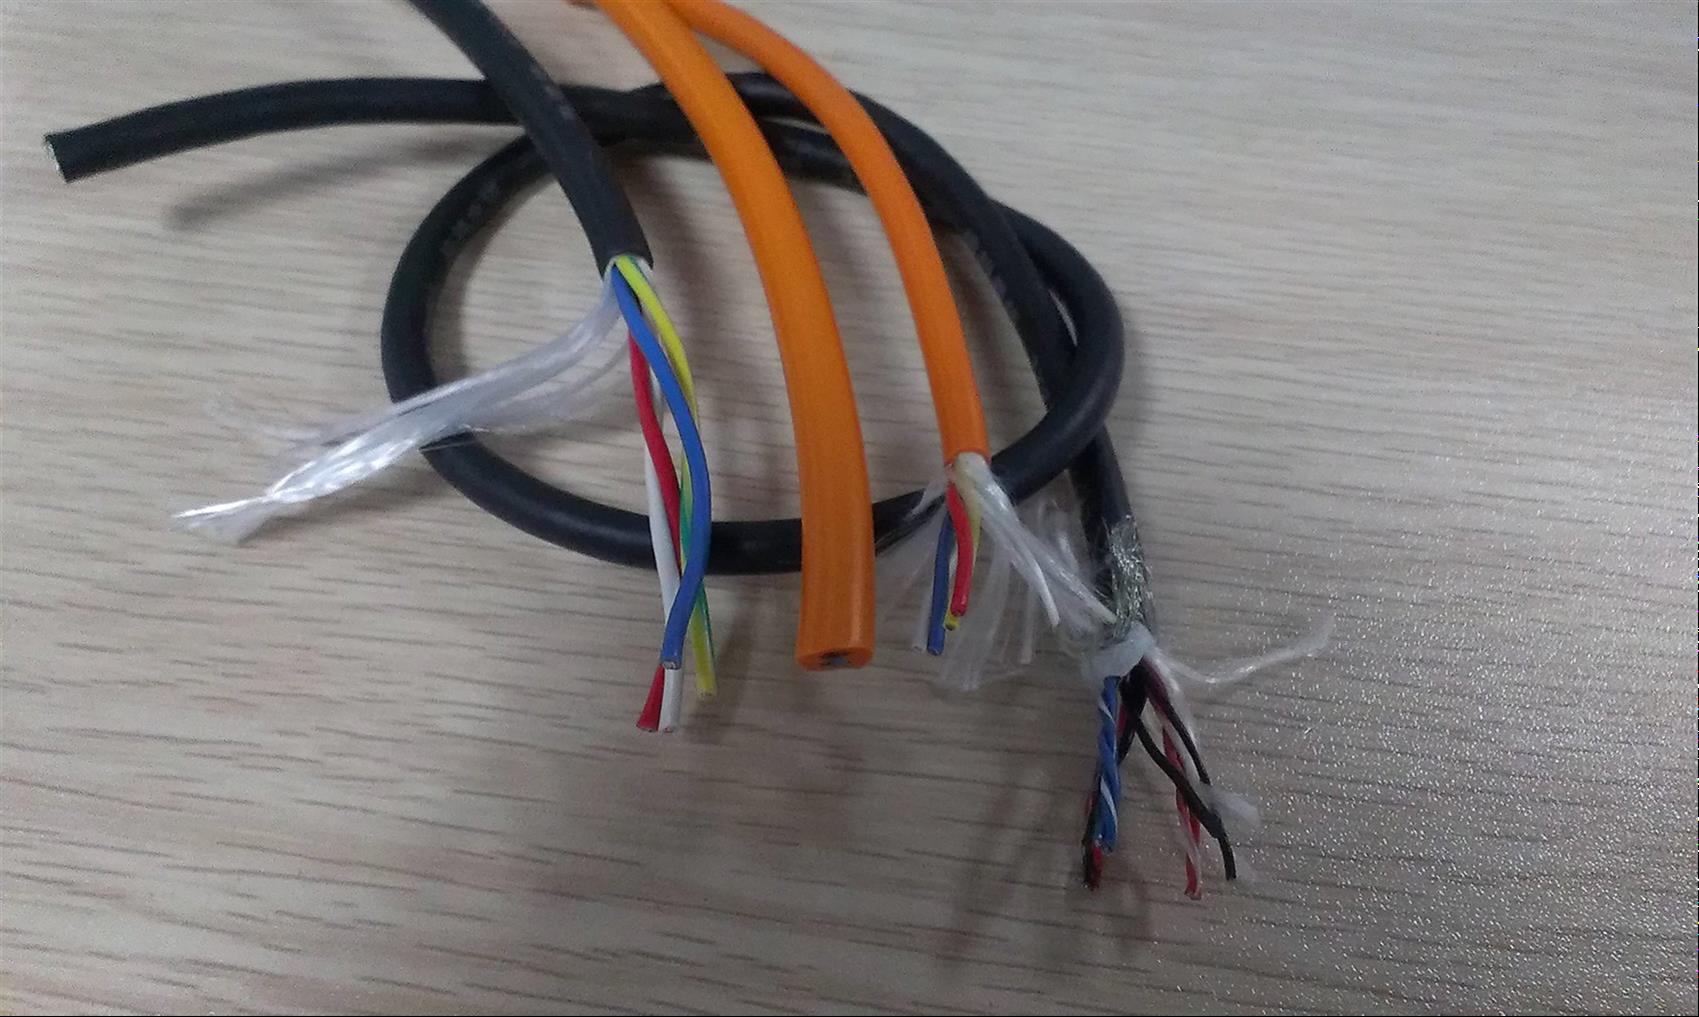 黄南编码器电缆 绝缘性能优异、化学性能稳定；